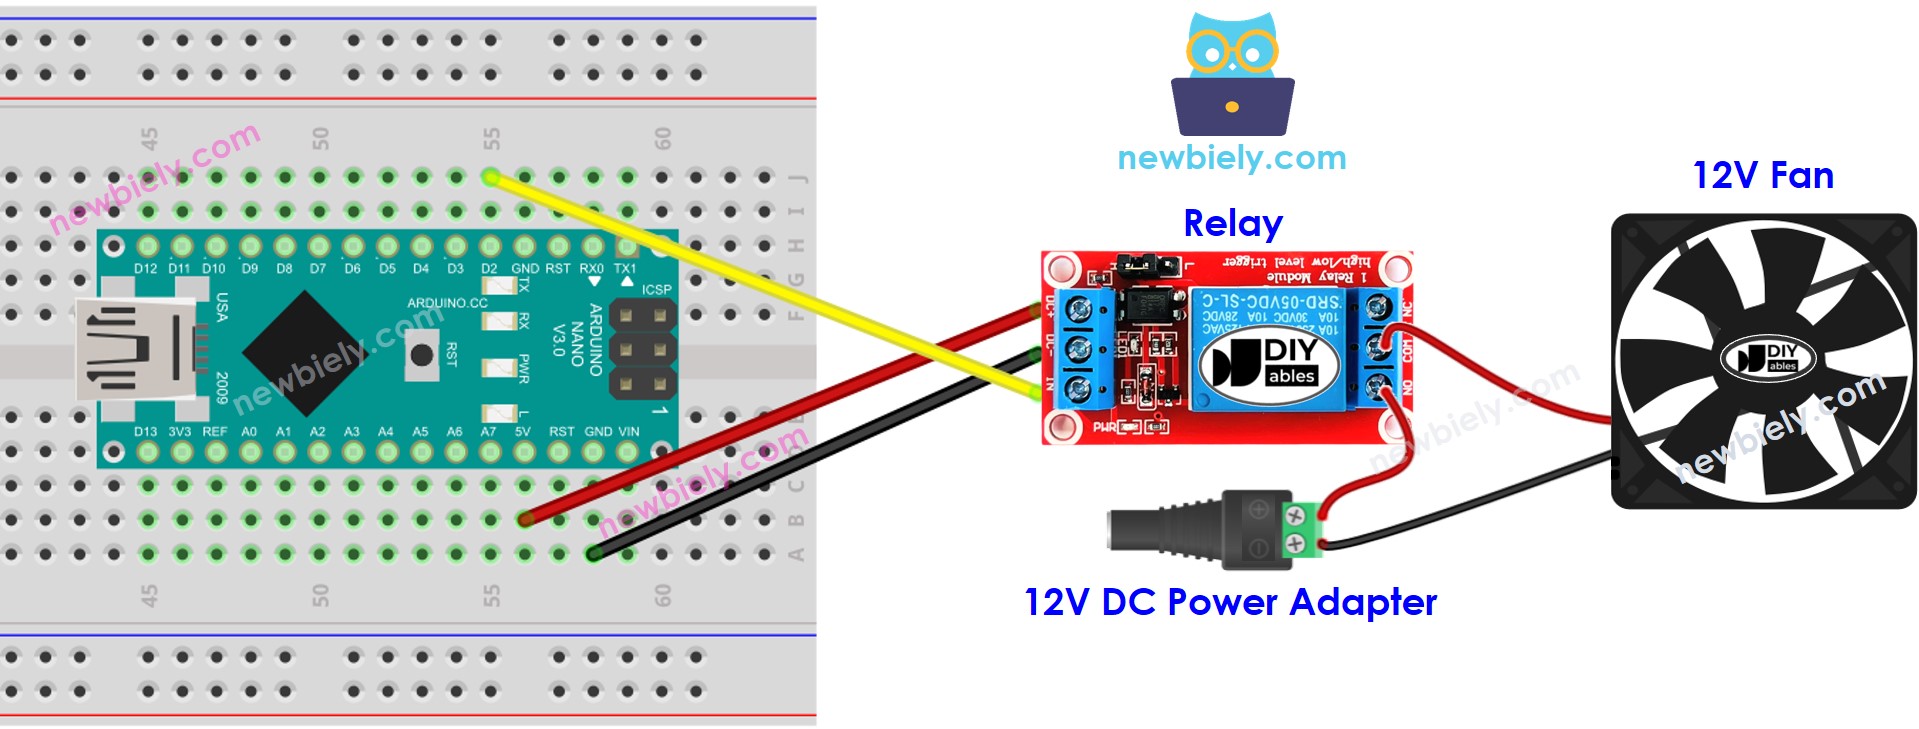 The wiring diagram between Arduino Nano and Fan